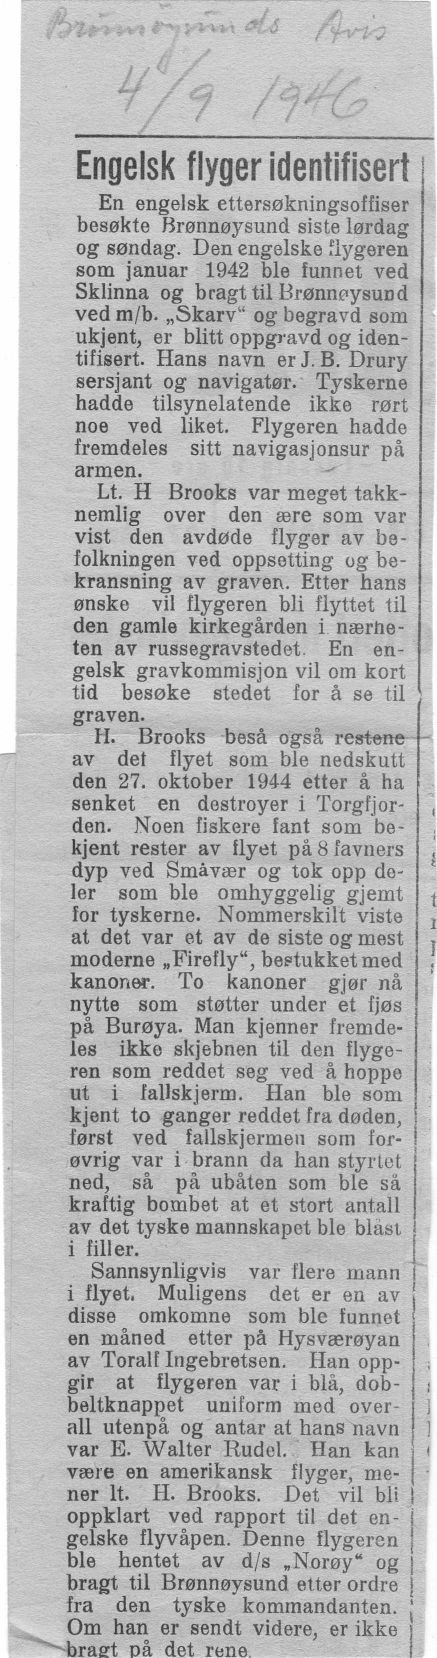 Image Norwegian Newspaper article describing work of Hubert Brooks 1 of 2